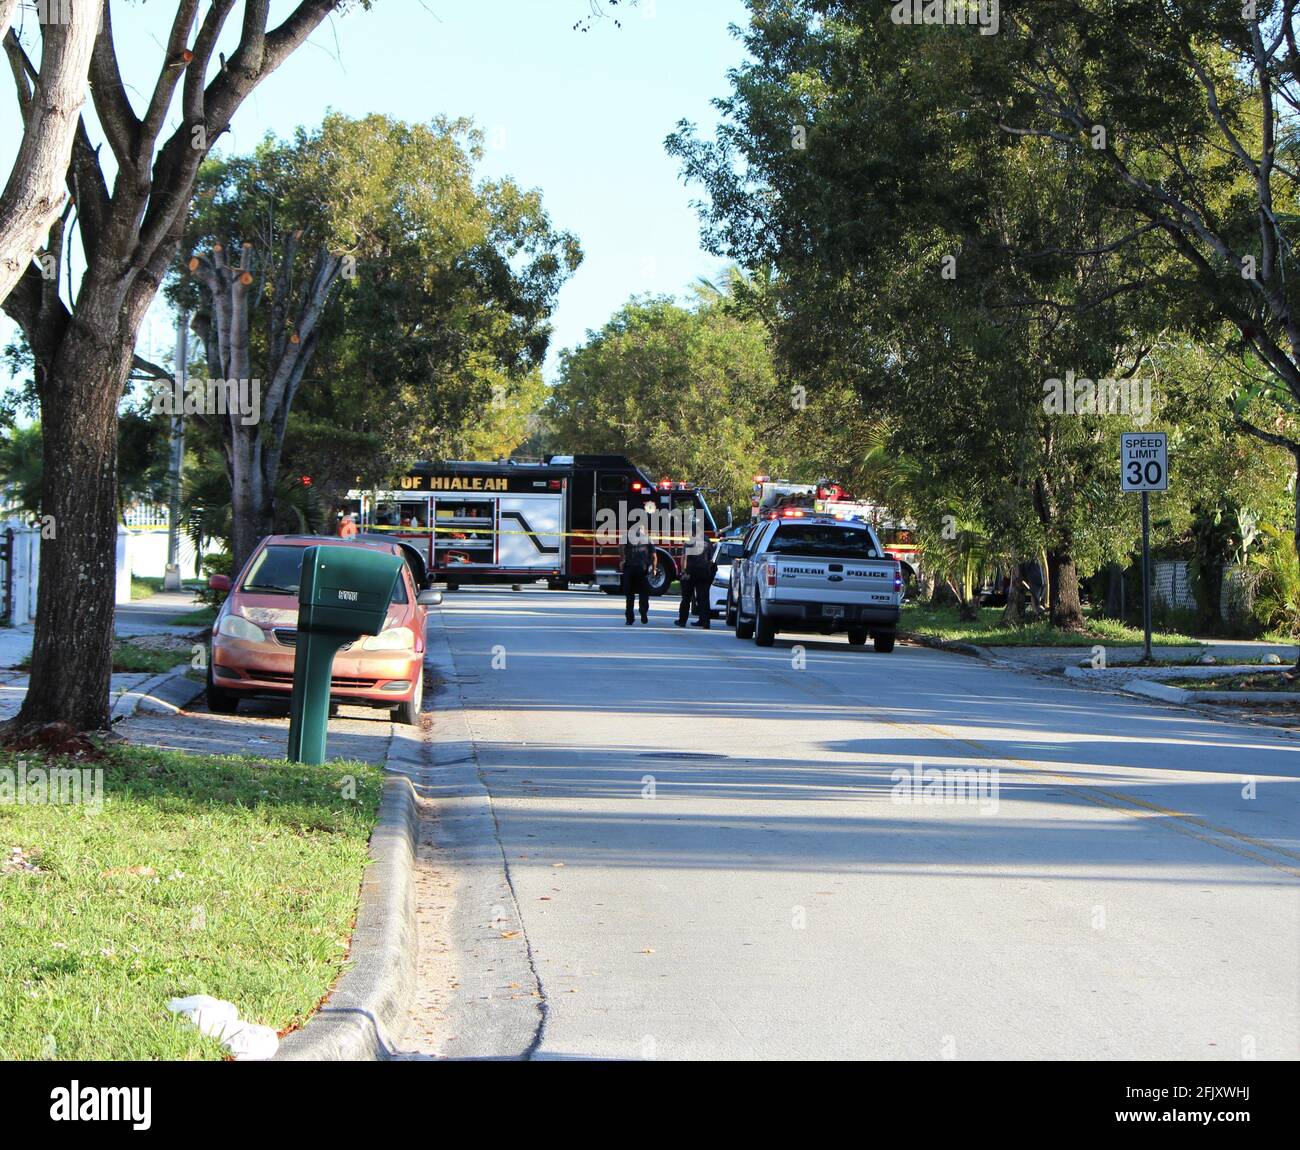 Gli ufficiali di polizia di Hialeah e i vigili del fuoco arrivano a una fermata di una scena criminale di inseguimento dell'automobile dove hanno bloccato molte strade. Miami, contea di Dade. Foto Stock